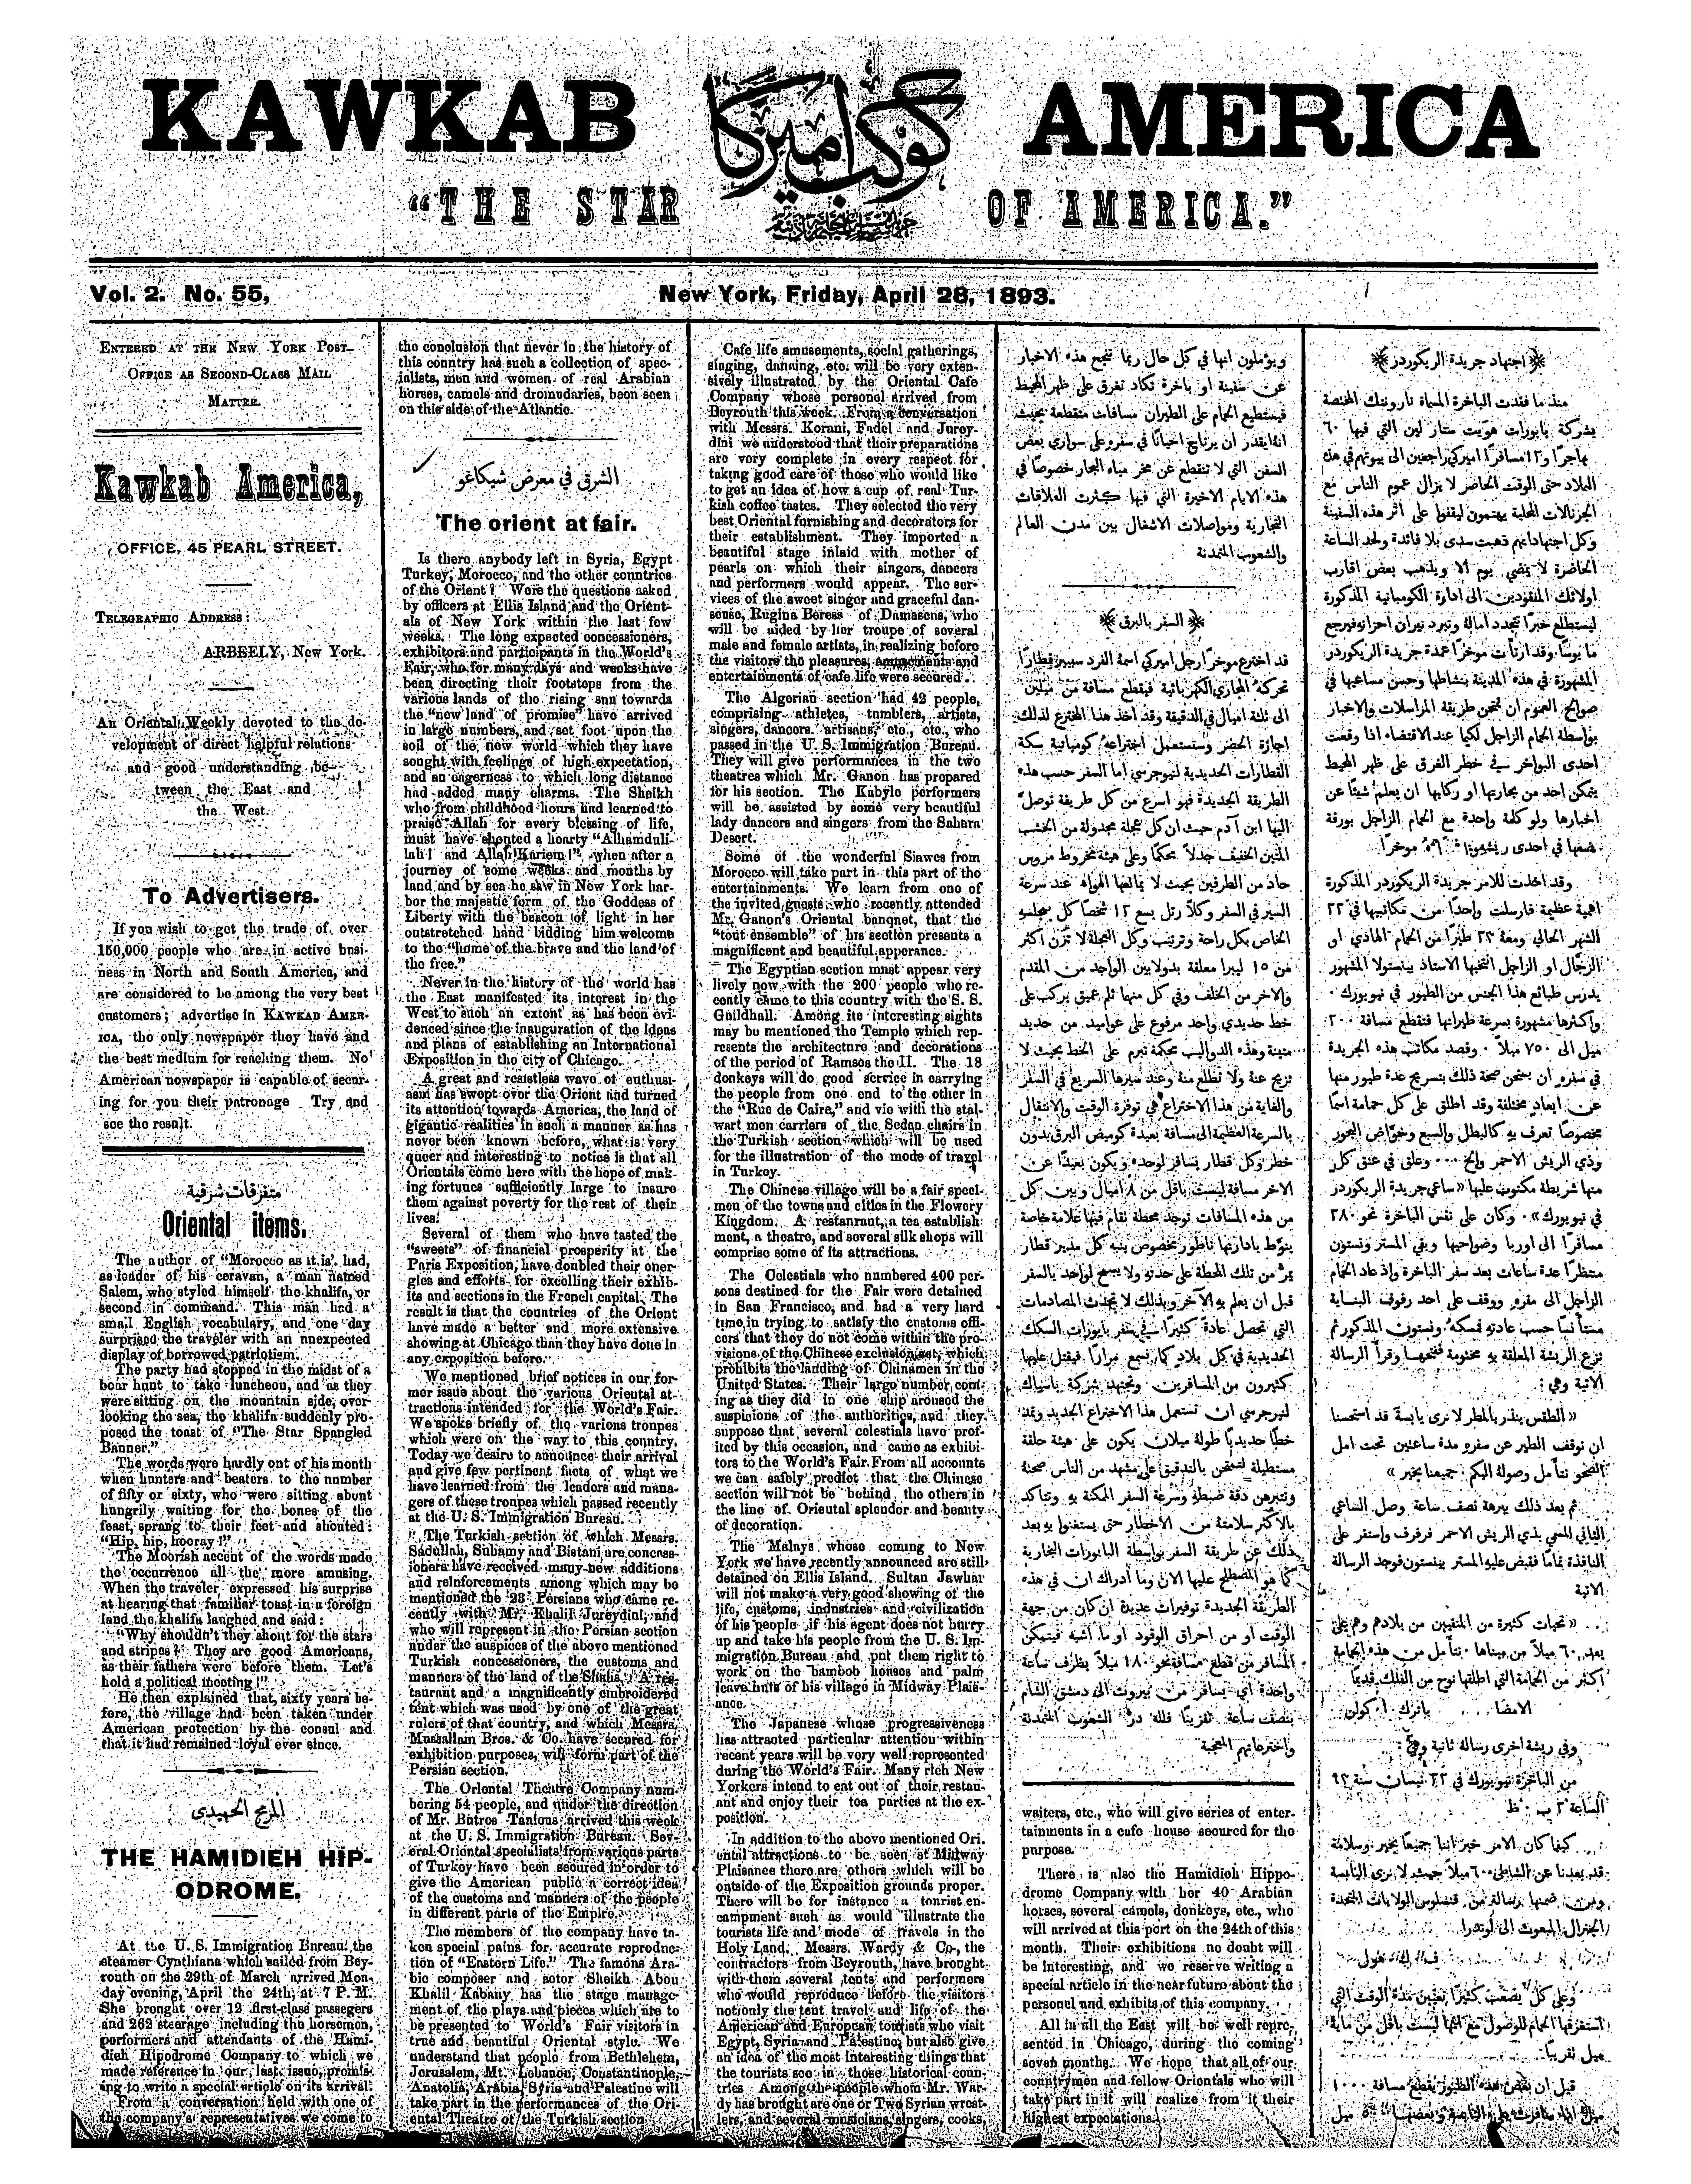 Kawkab America #55, 28 Apr 1893, p.1 (English)